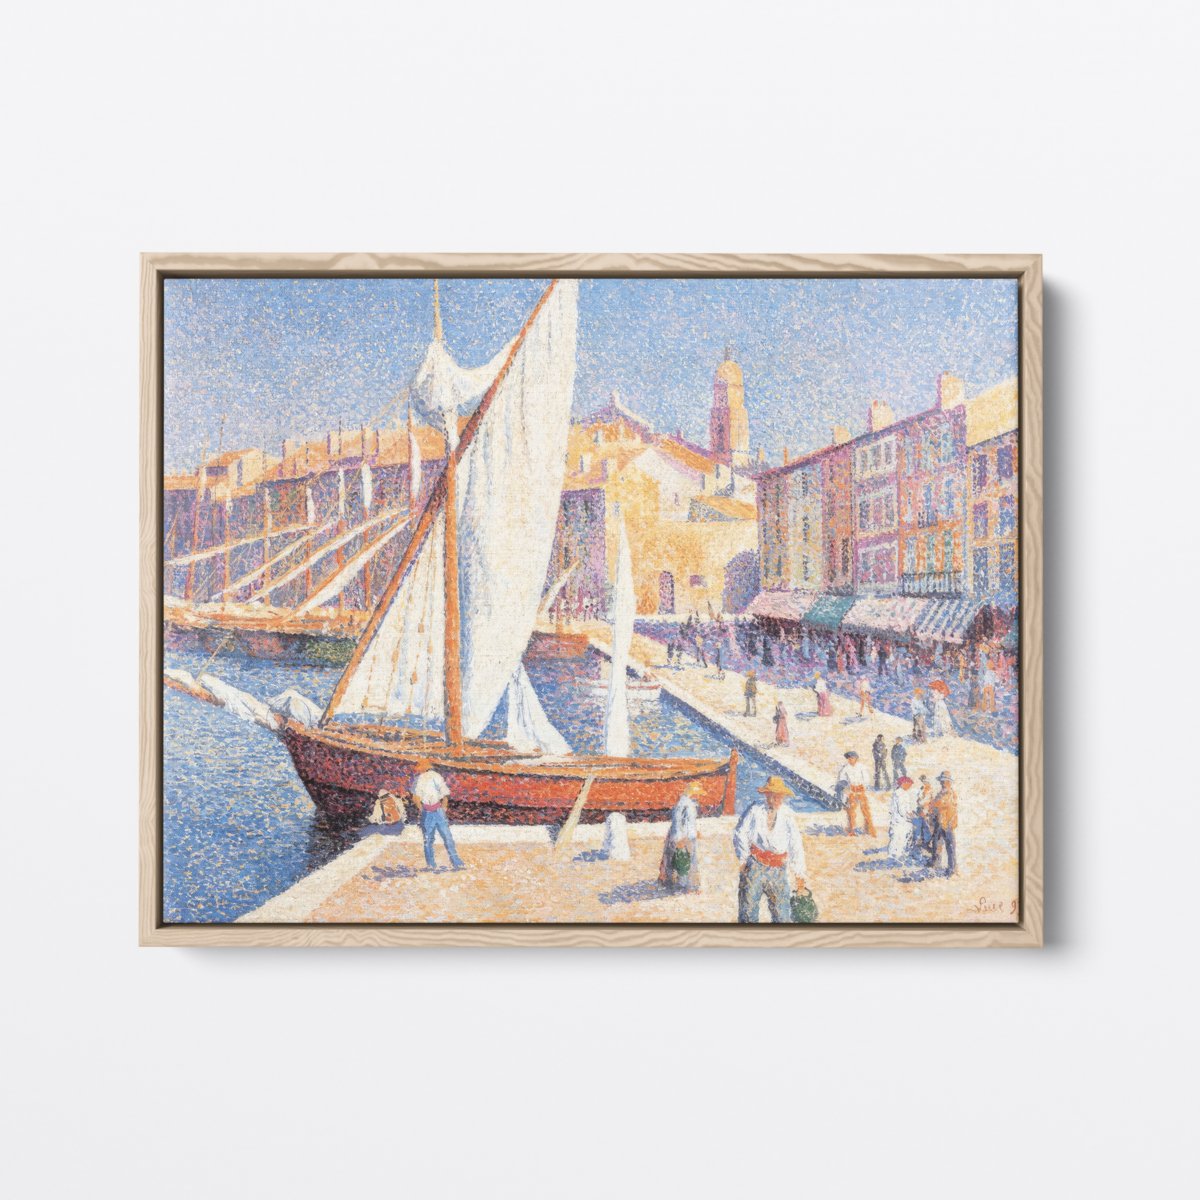 St. Tropez | Maximilien Luce | Ave Legato | Canvas Art Prints | Vintage Artwork